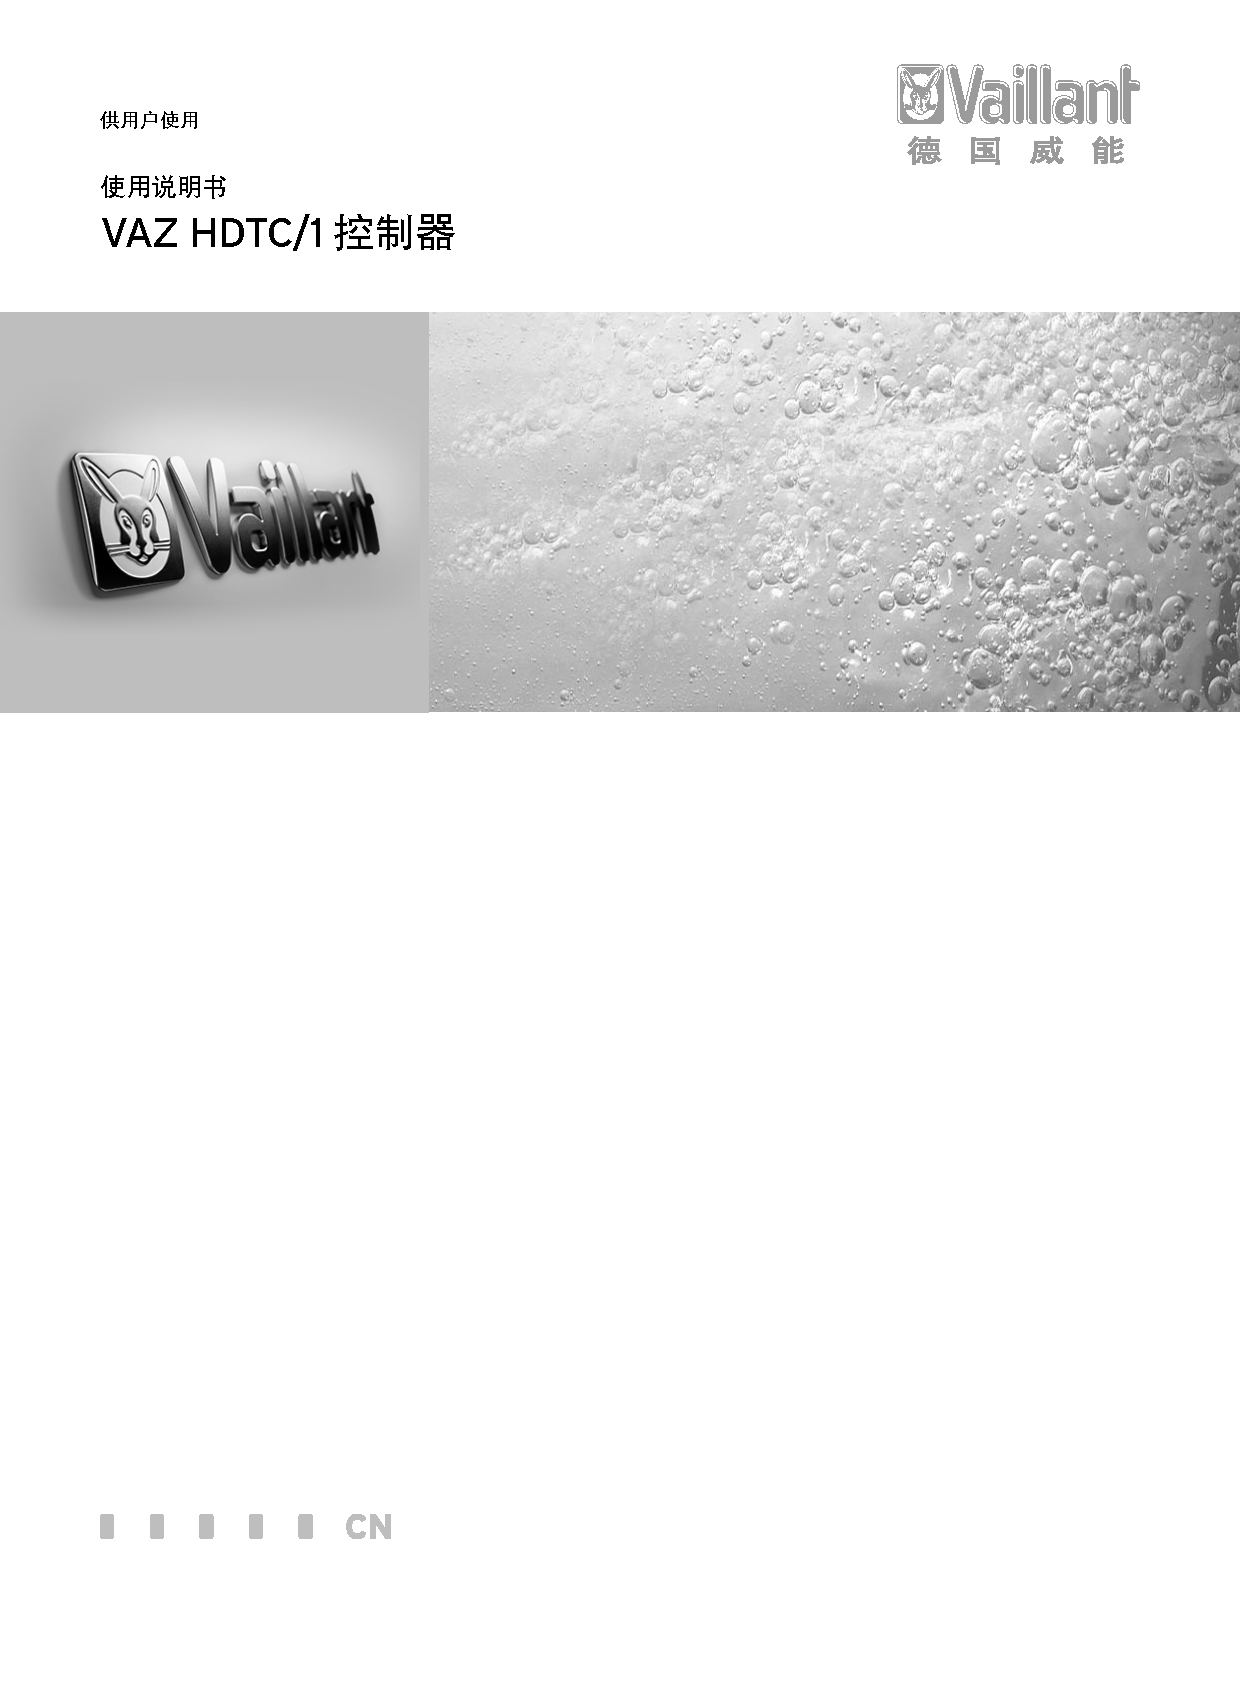 威能 Vaillant VAZ HDTC/1 使用说明书 封面